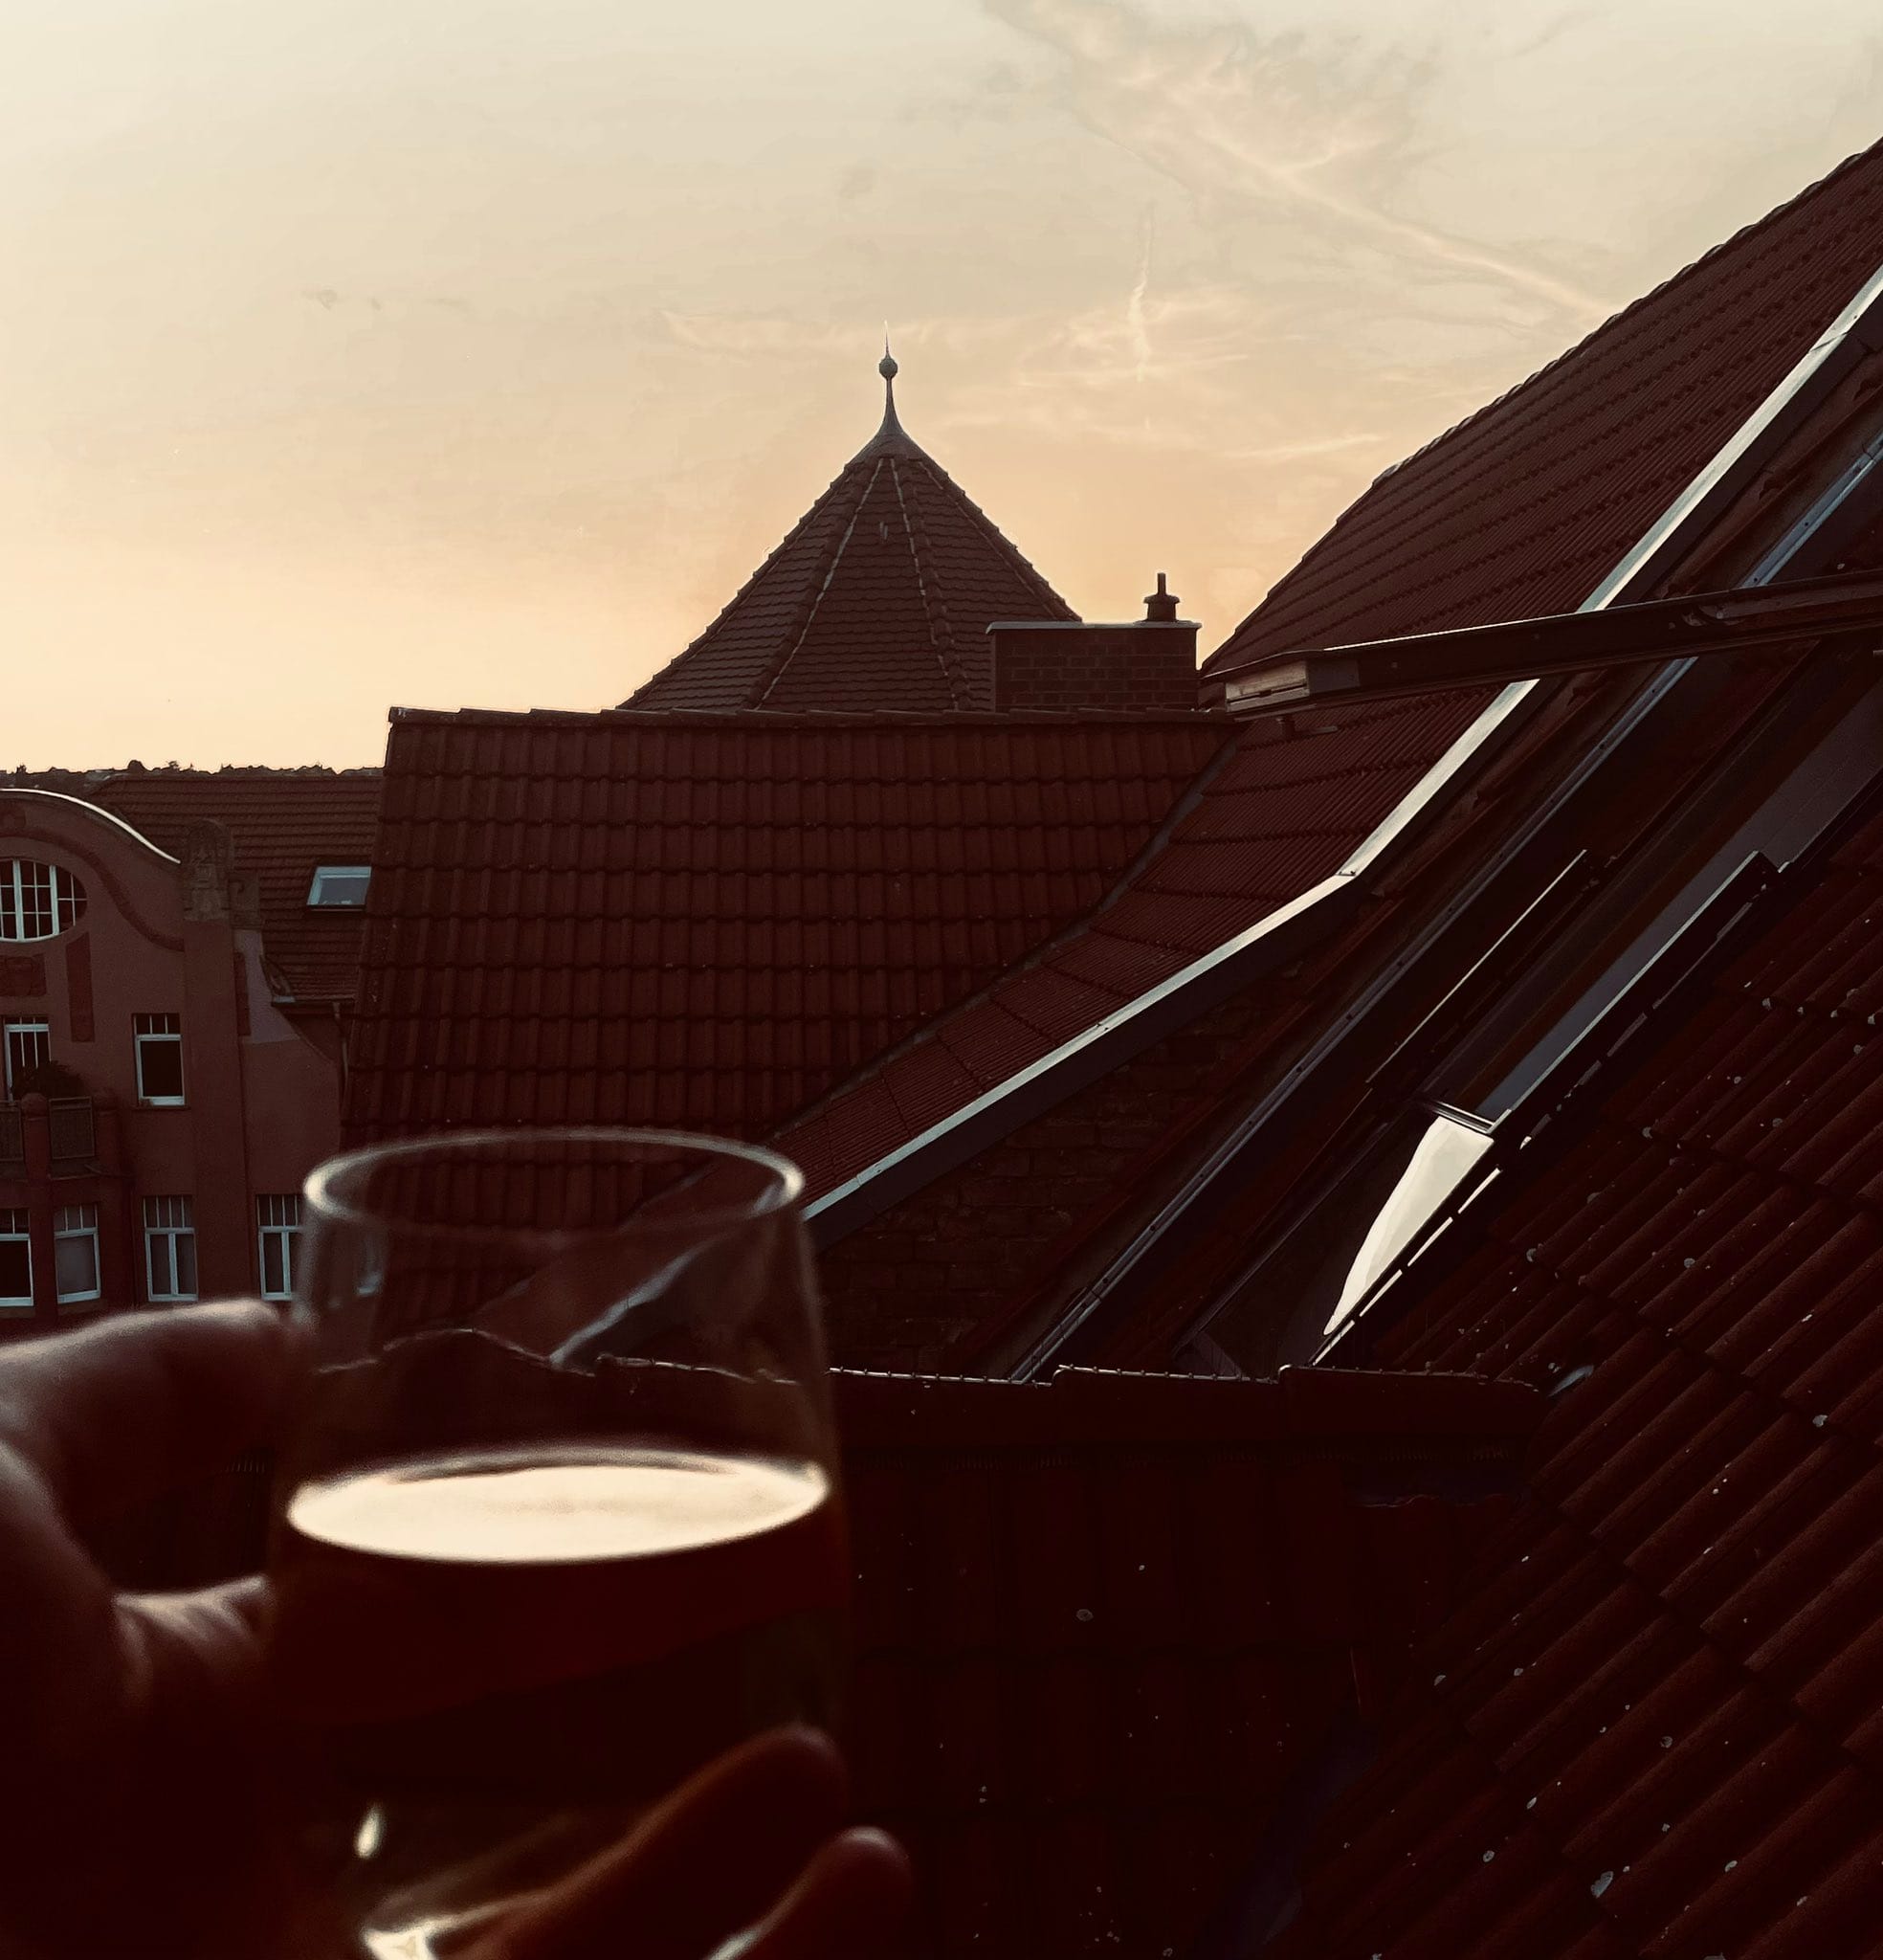 Herr Montag hält ein Glas Weißwein in der Hand, im Hintergrund sieht man Häuser, Dächer und den Abendhimmel. (C) Herr Montag.